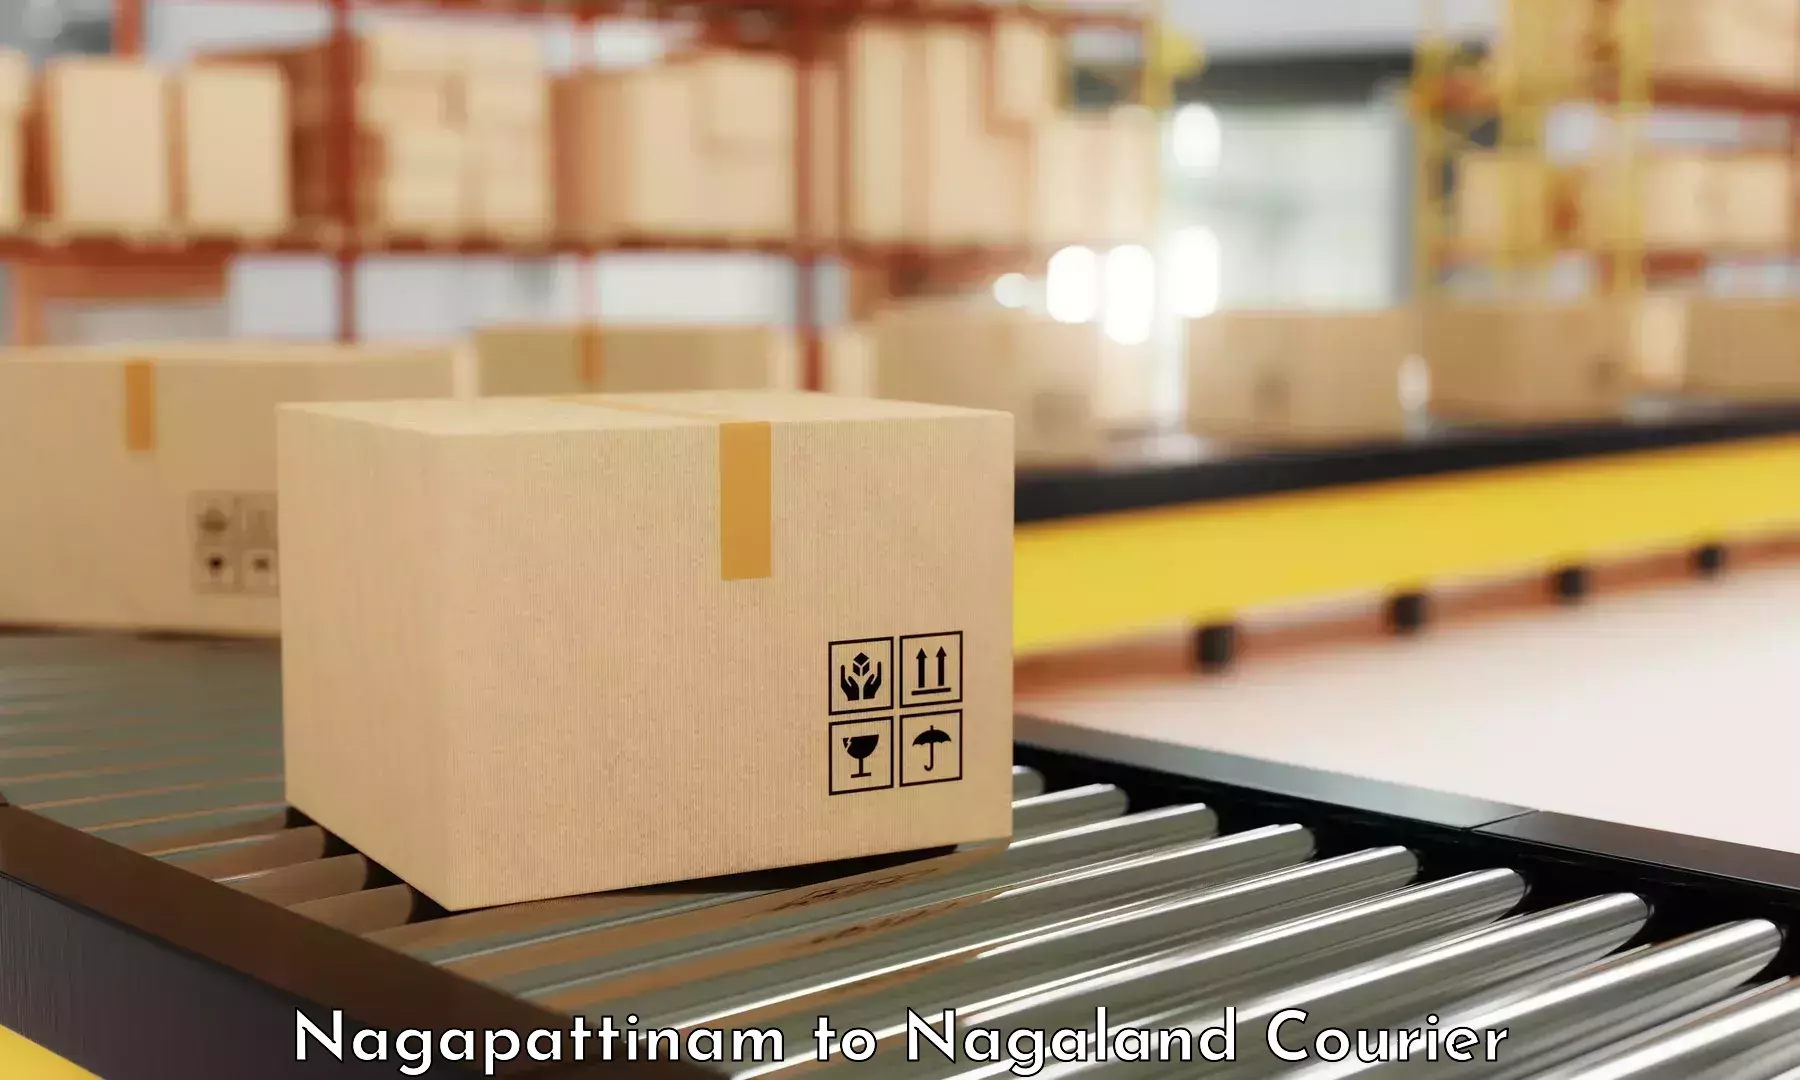 Individual parcel service Nagapattinam to Nagaland